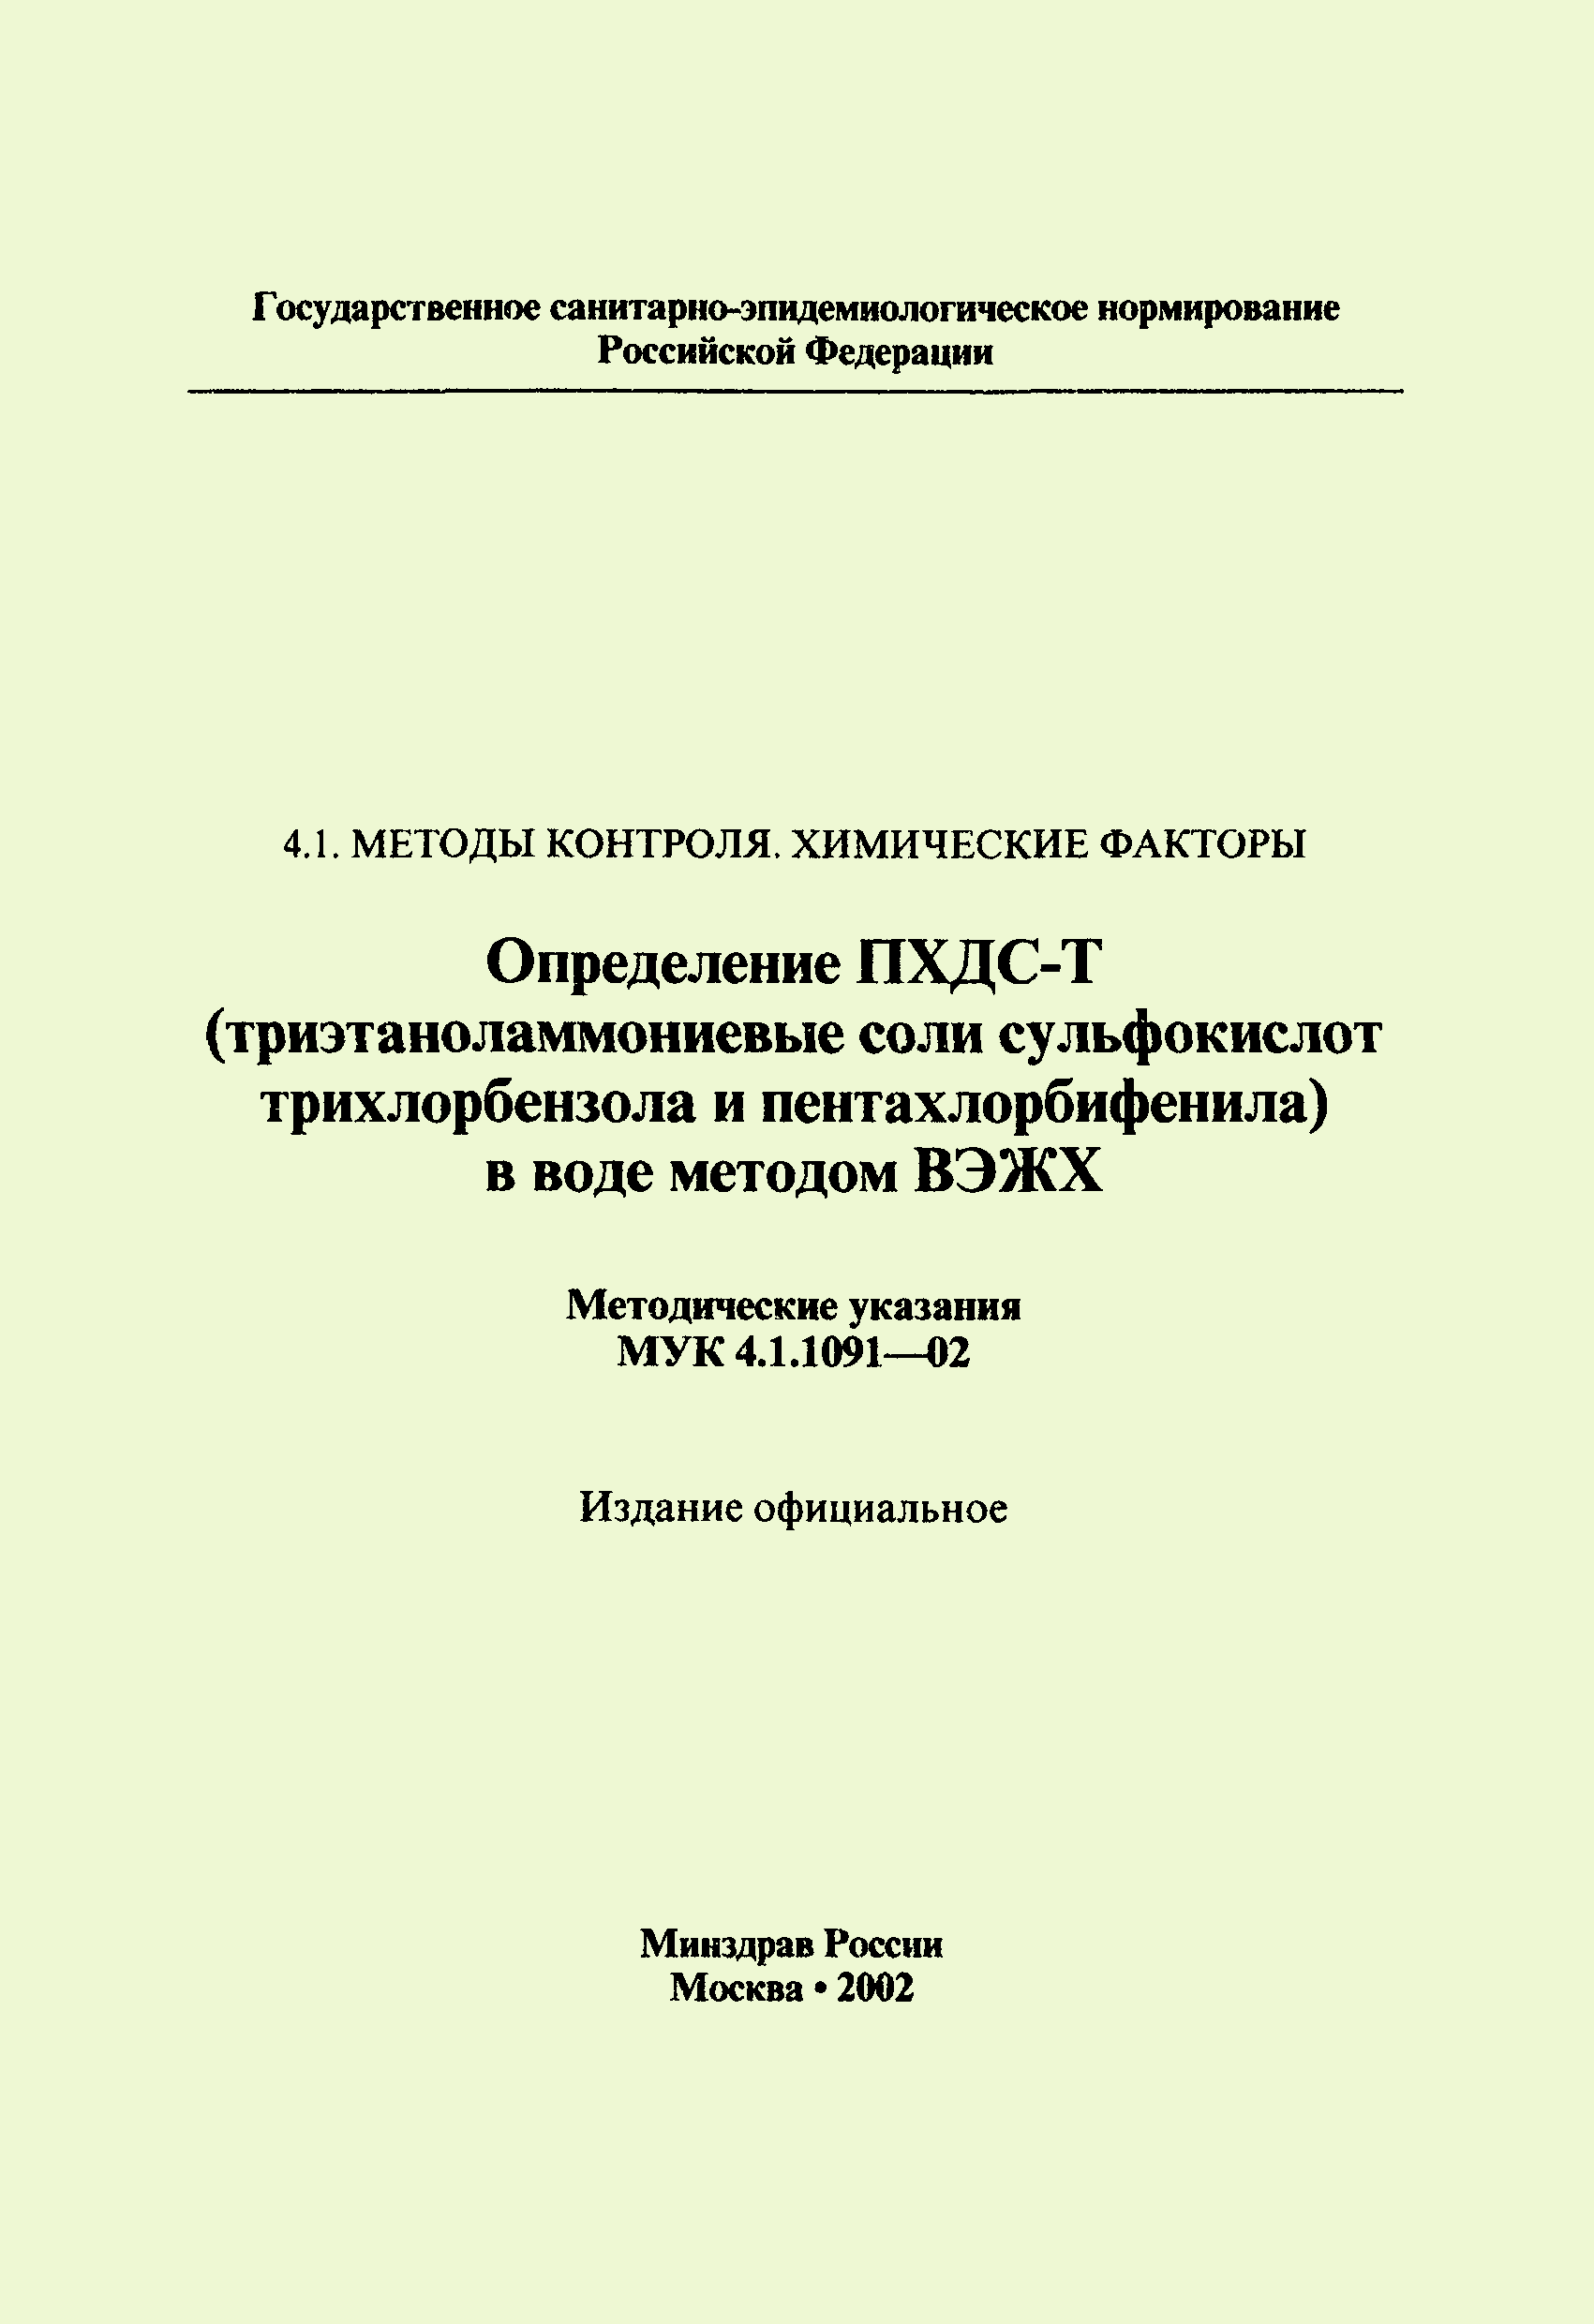 МУК 4.1.1091-02